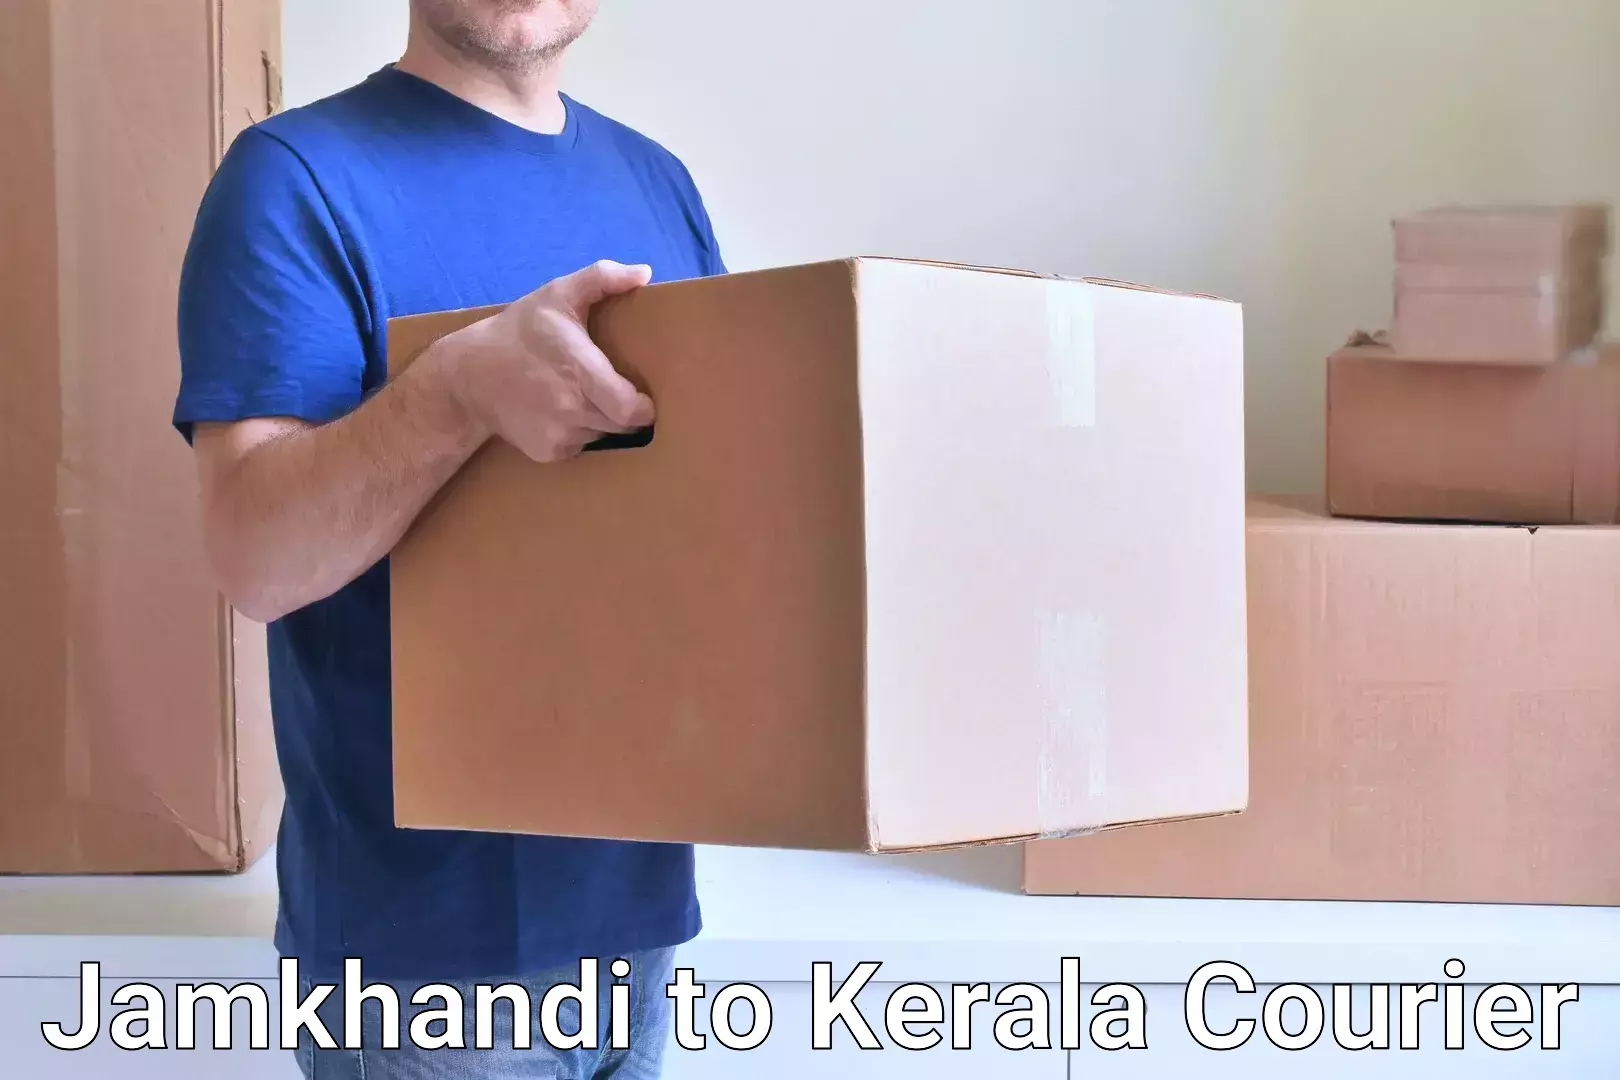 Modern courier technology Jamkhandi to Kerala